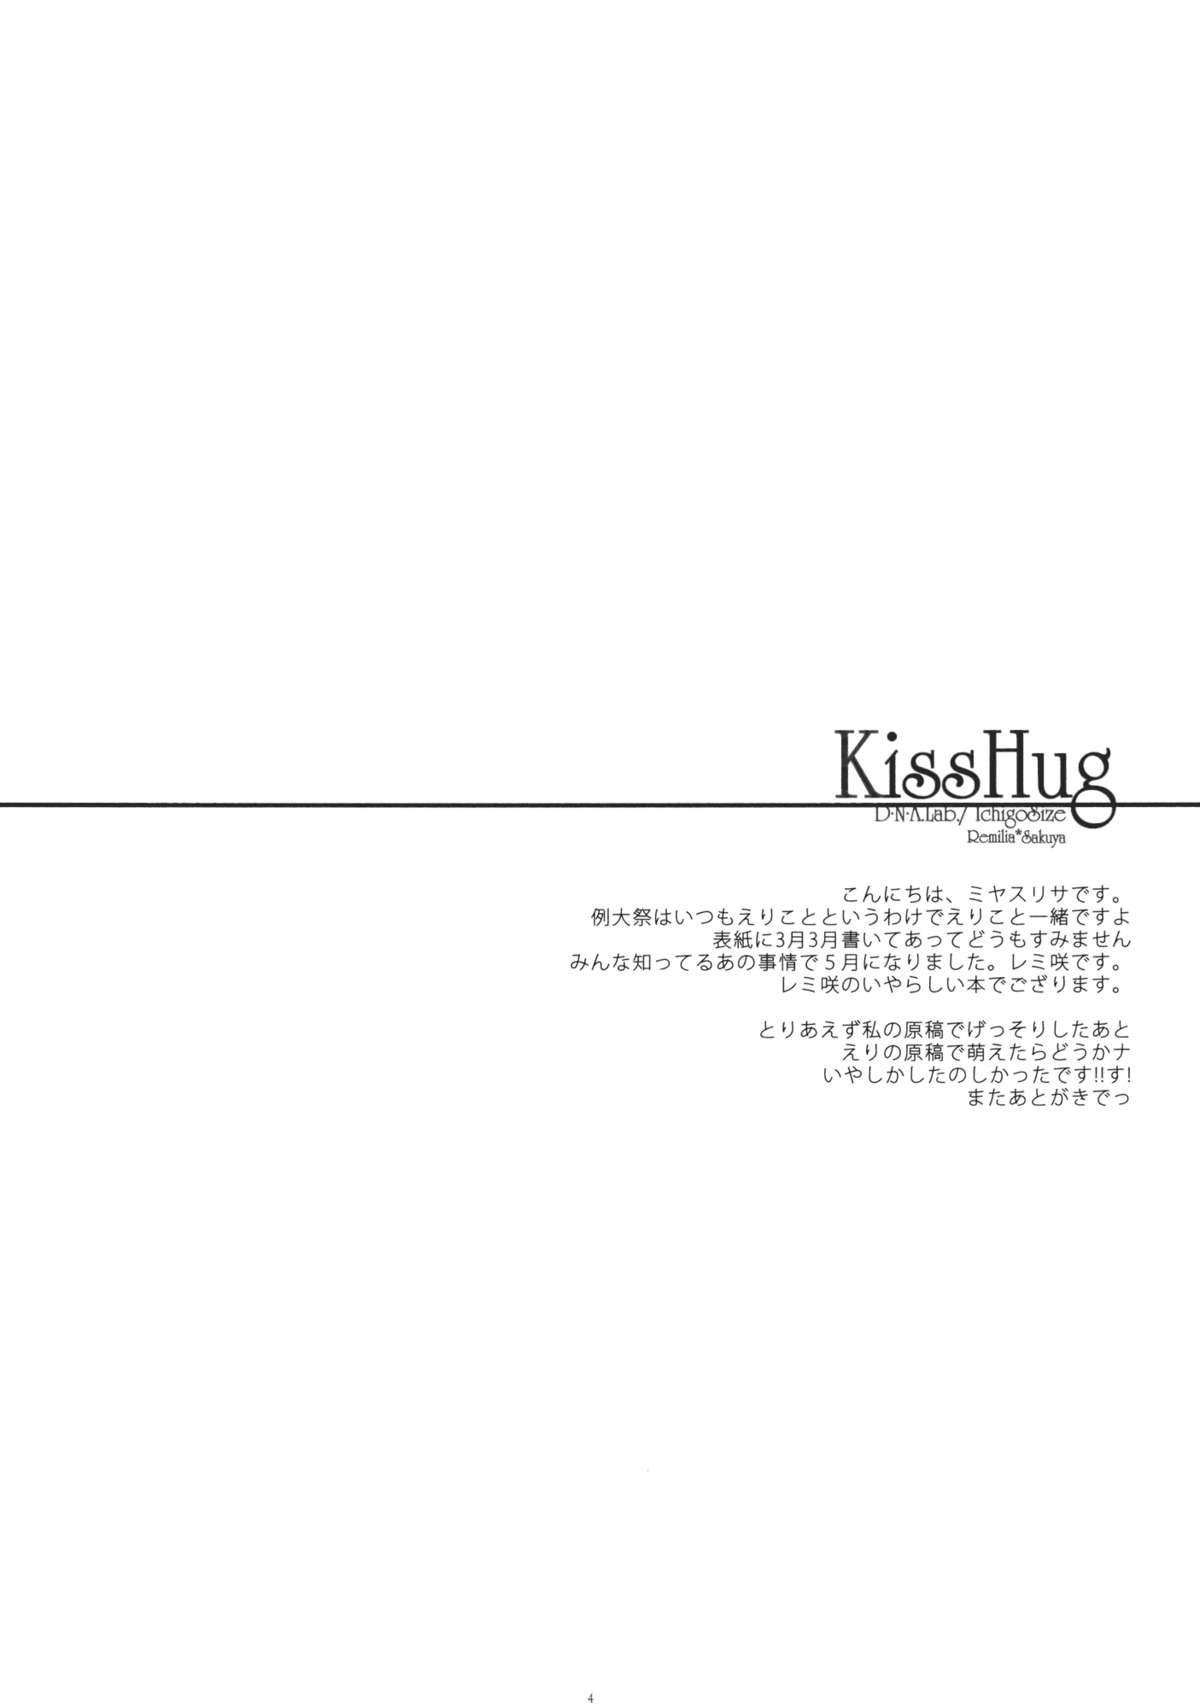 (例大祭8) [D・N・A.Lab.×いちごさいず (ミヤスリサ, なつめえり)] KissHug (東方Project)